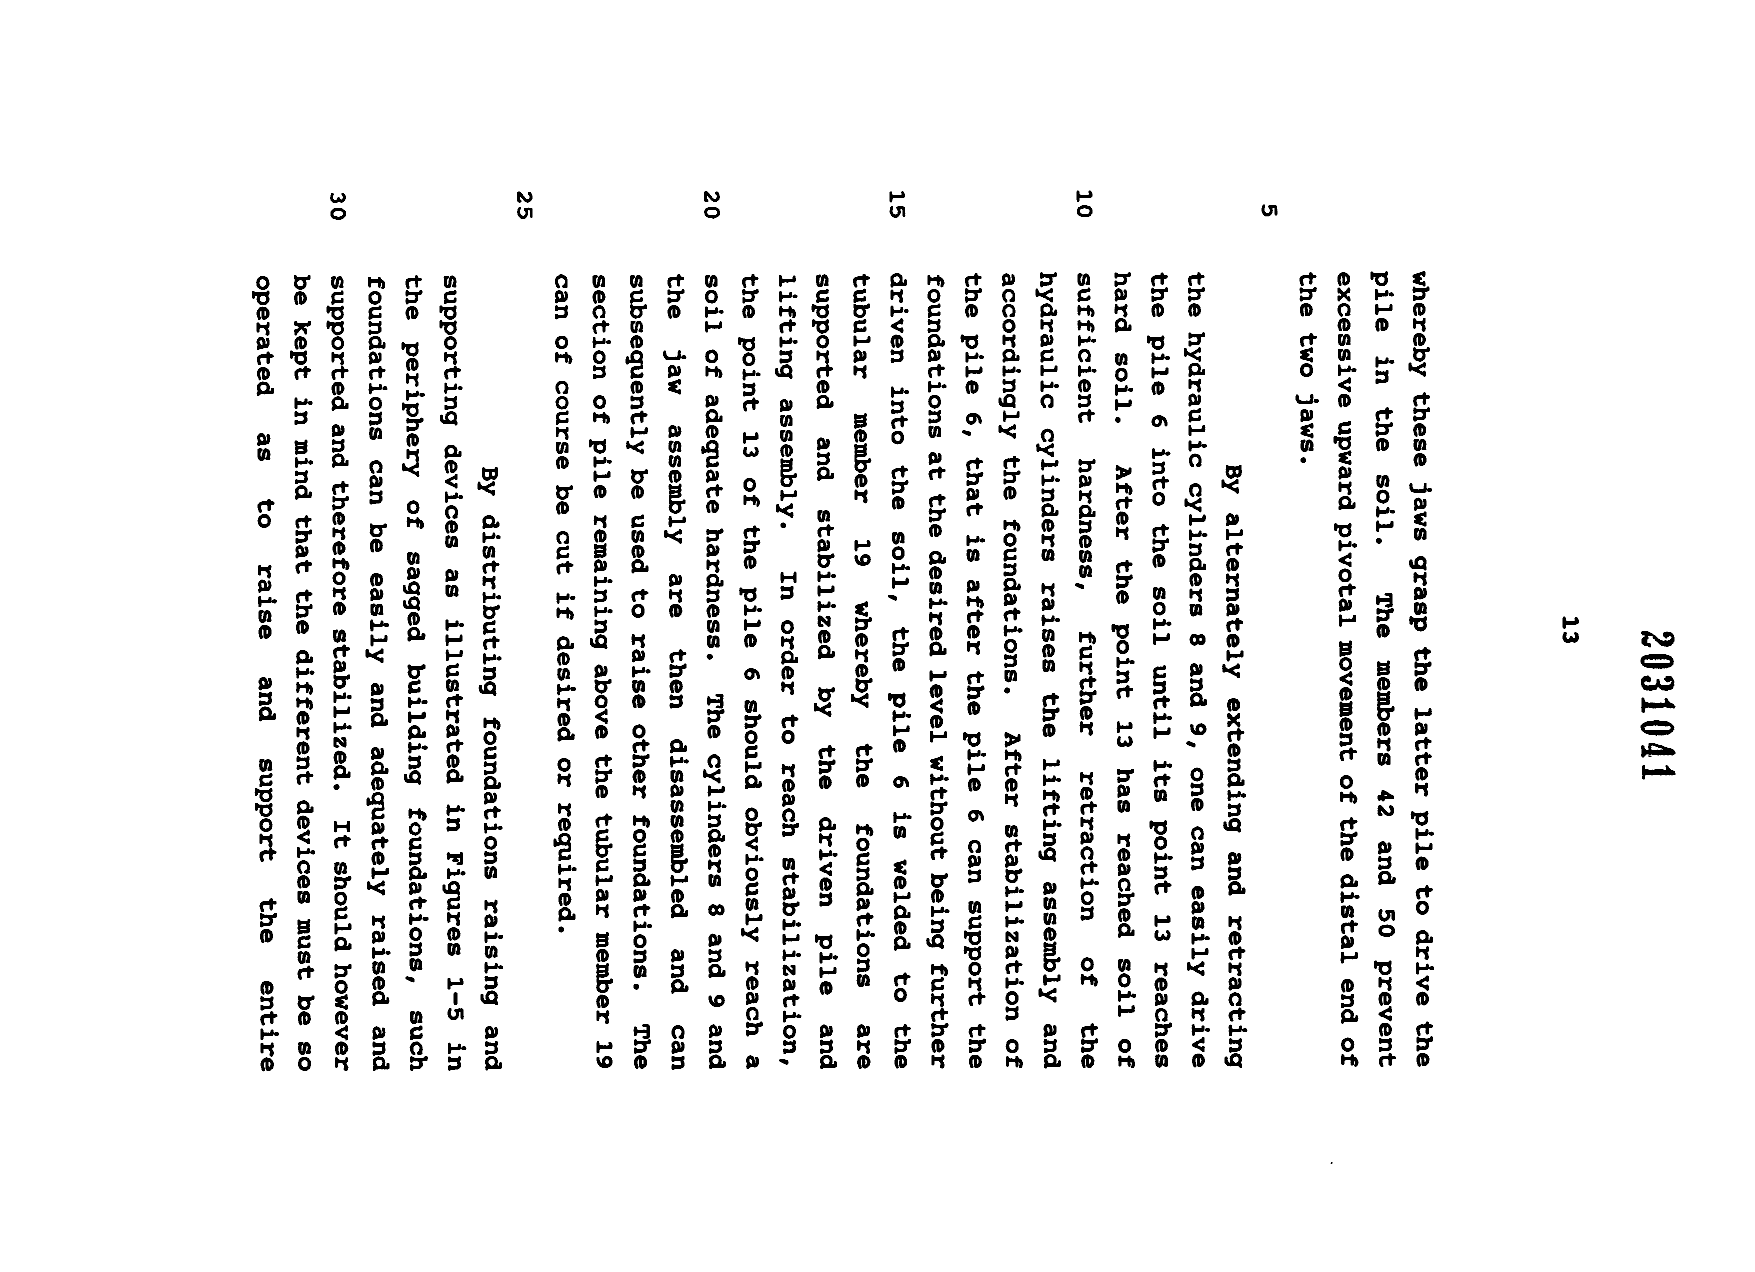 Document de brevet canadien 2031041. Description 19951216. Image 14 de 15